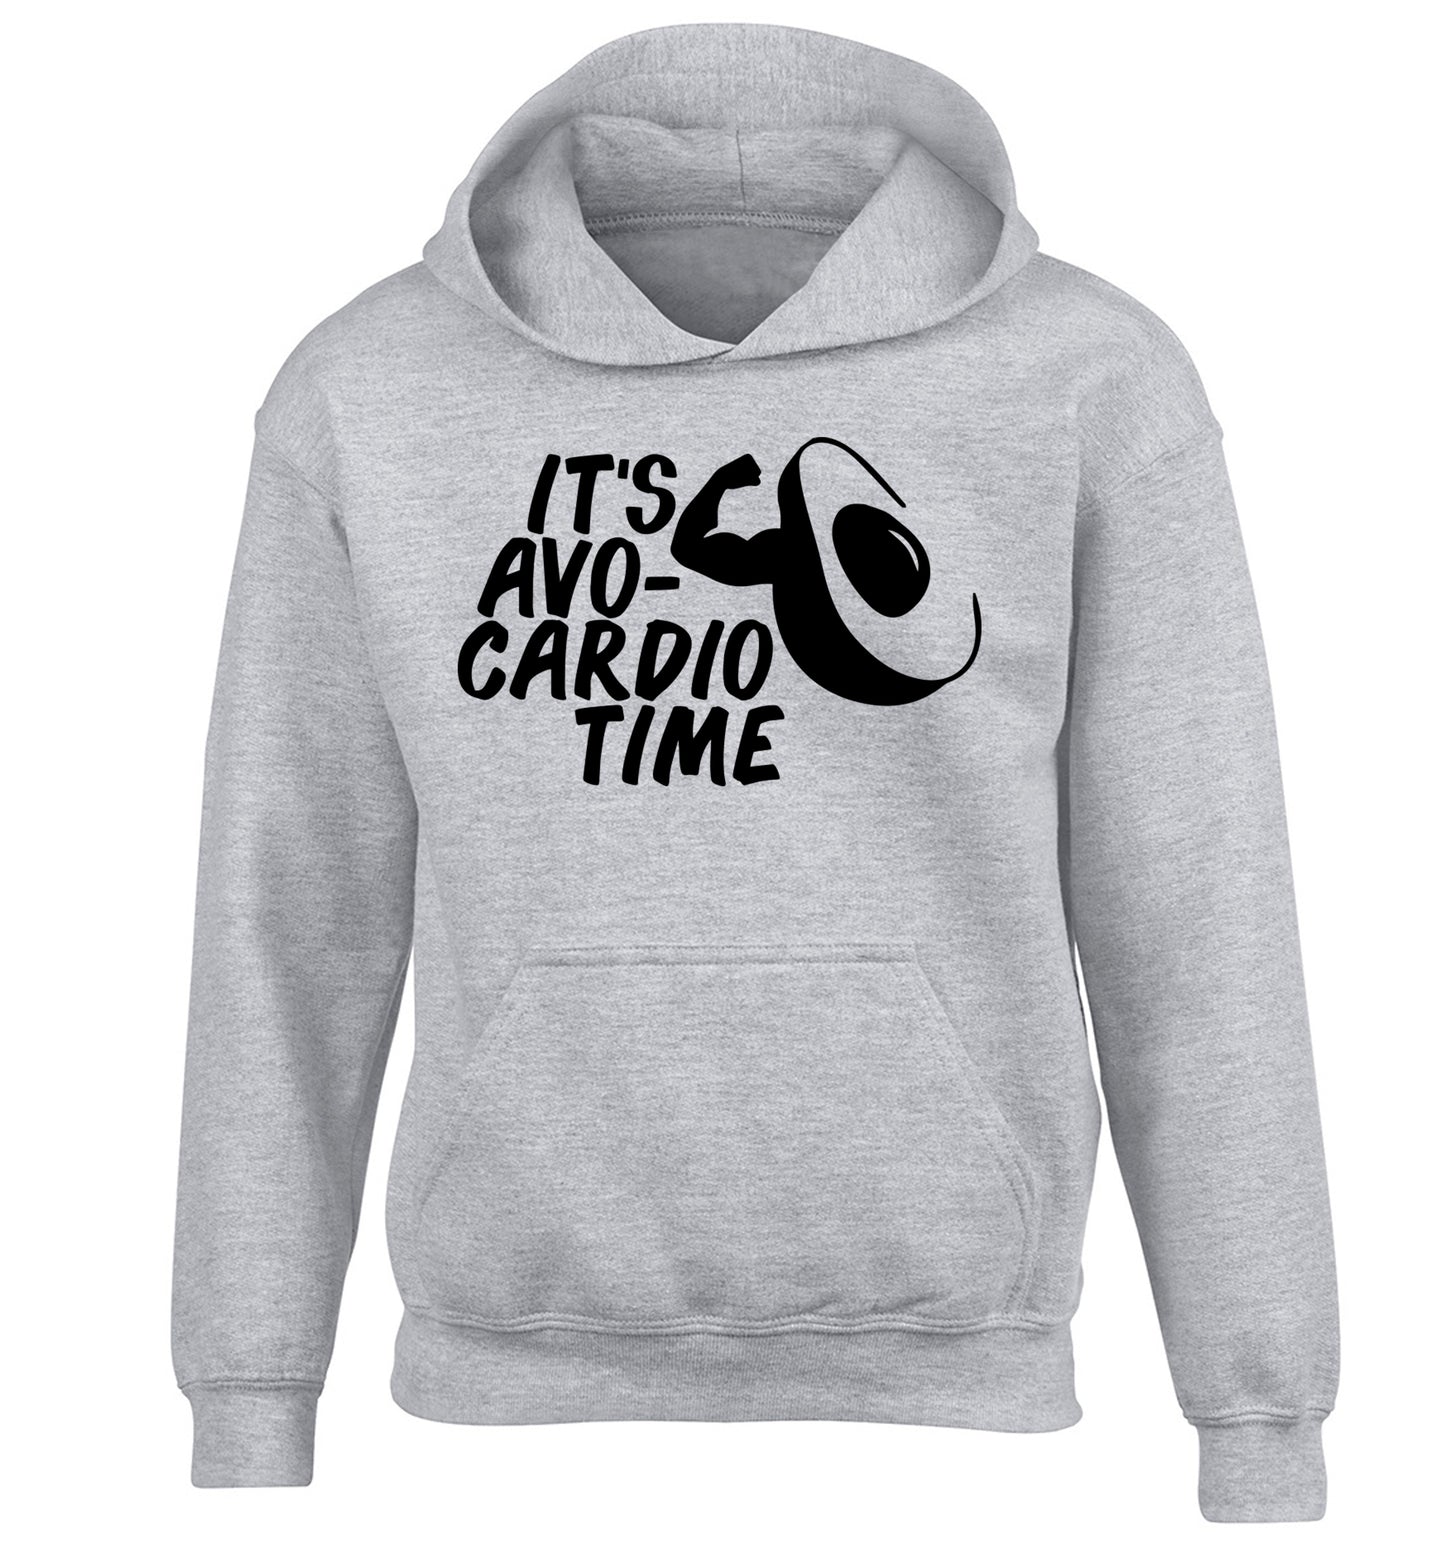 It's avo-cardio time children's grey hoodie 12-14 Years